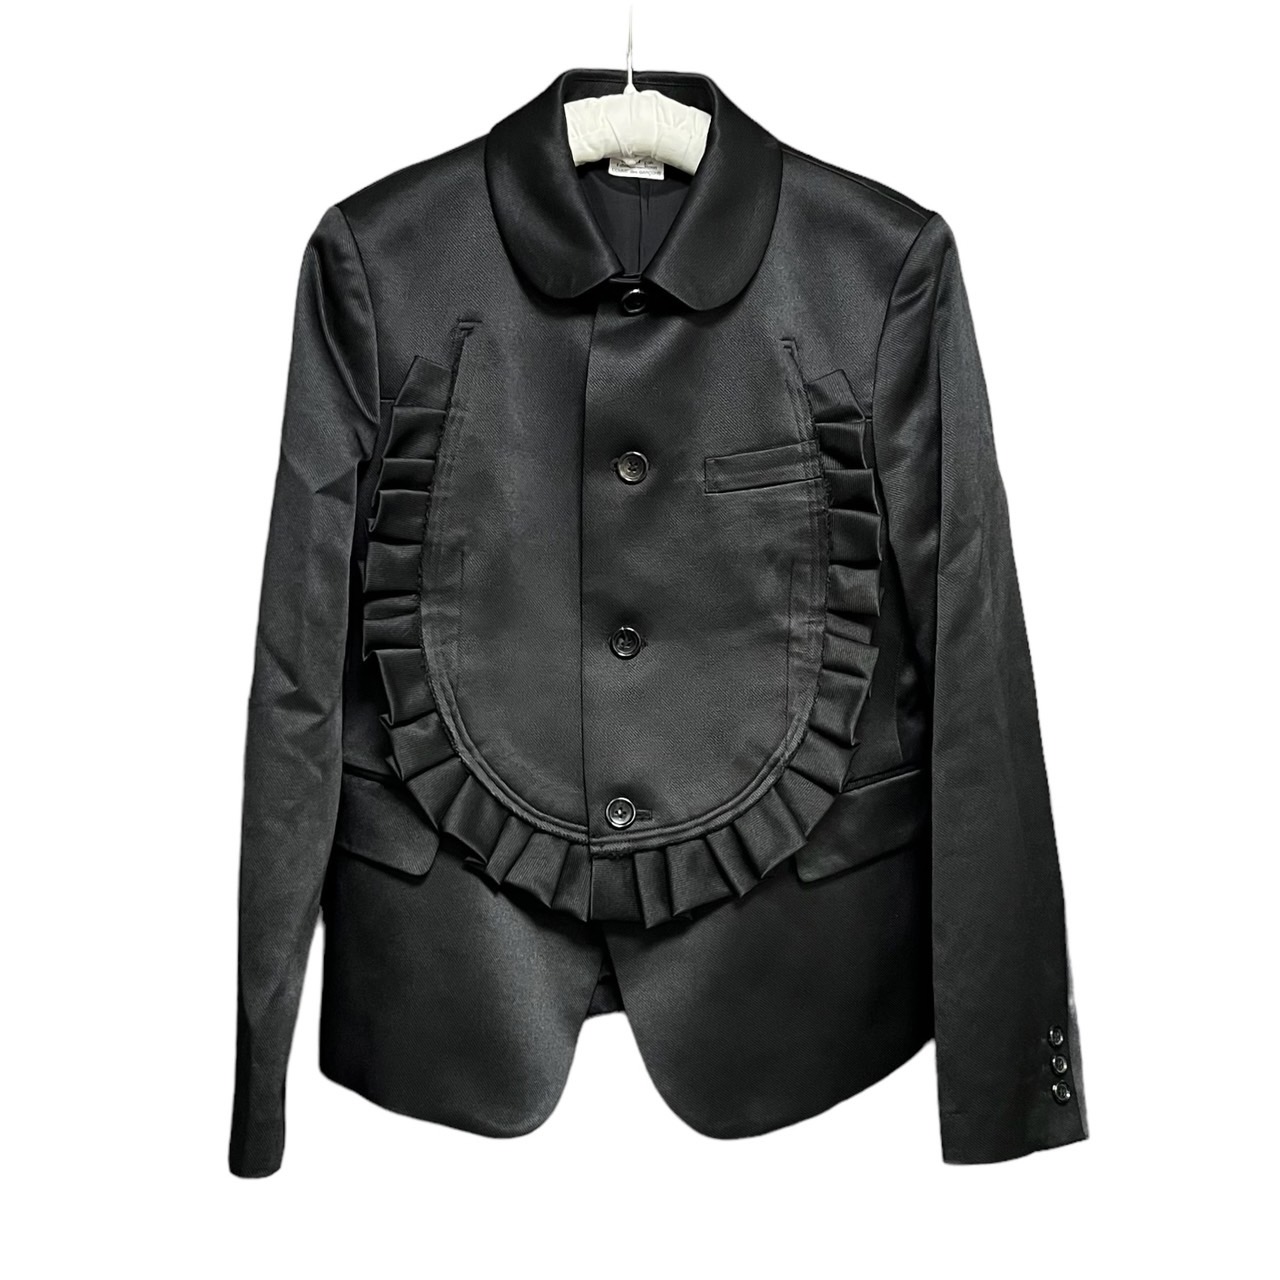 COMME des GARCONS COMME des GARCONS 19AW LOOK27 Cut out frill jacket 買取金額 25,000円